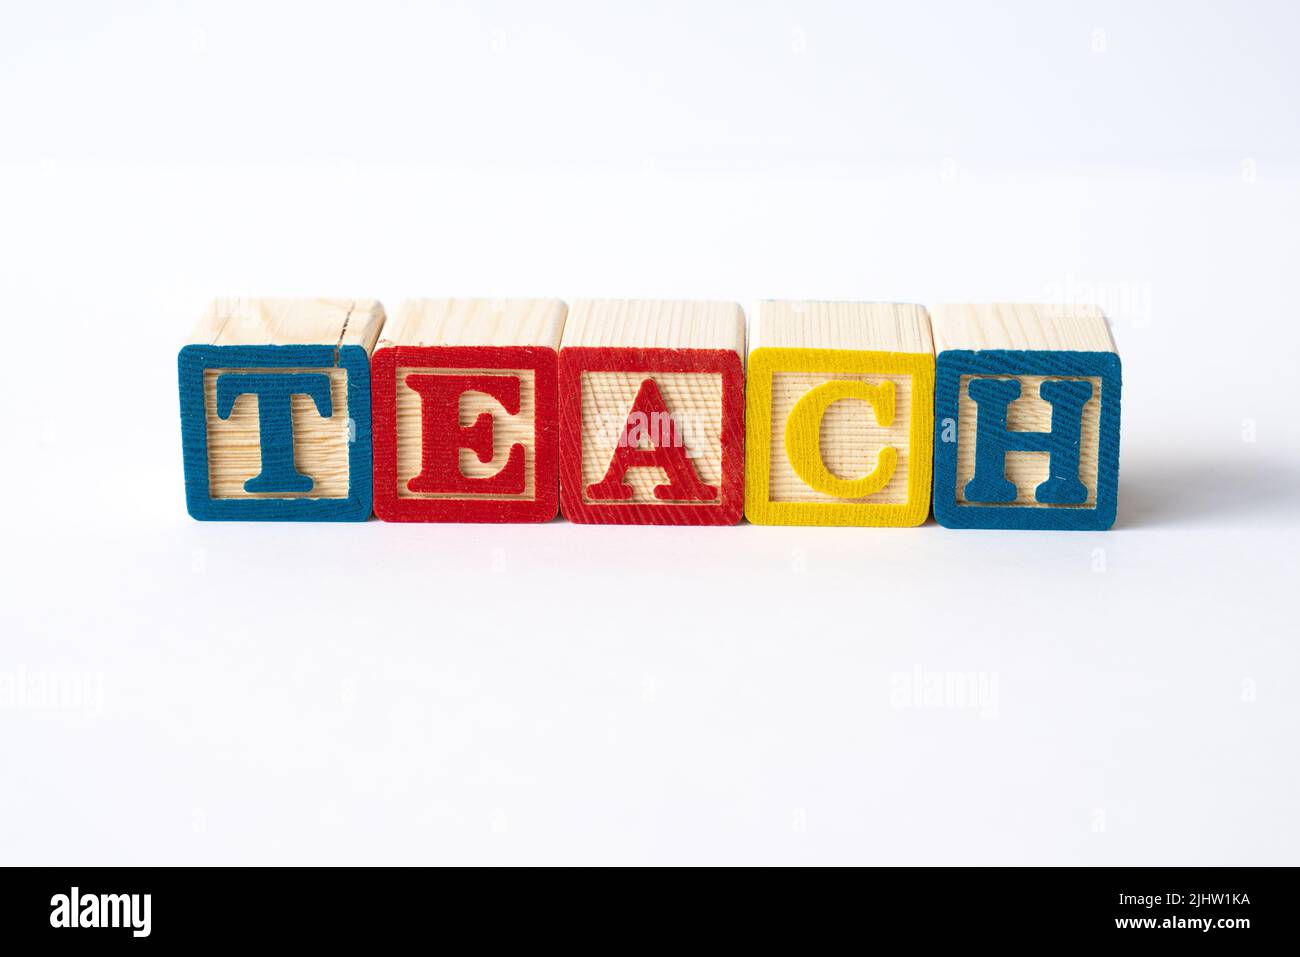 Das Wort Teach mit bunten Spielzeugblöcken auf weißem Hintergrund Stockfoto